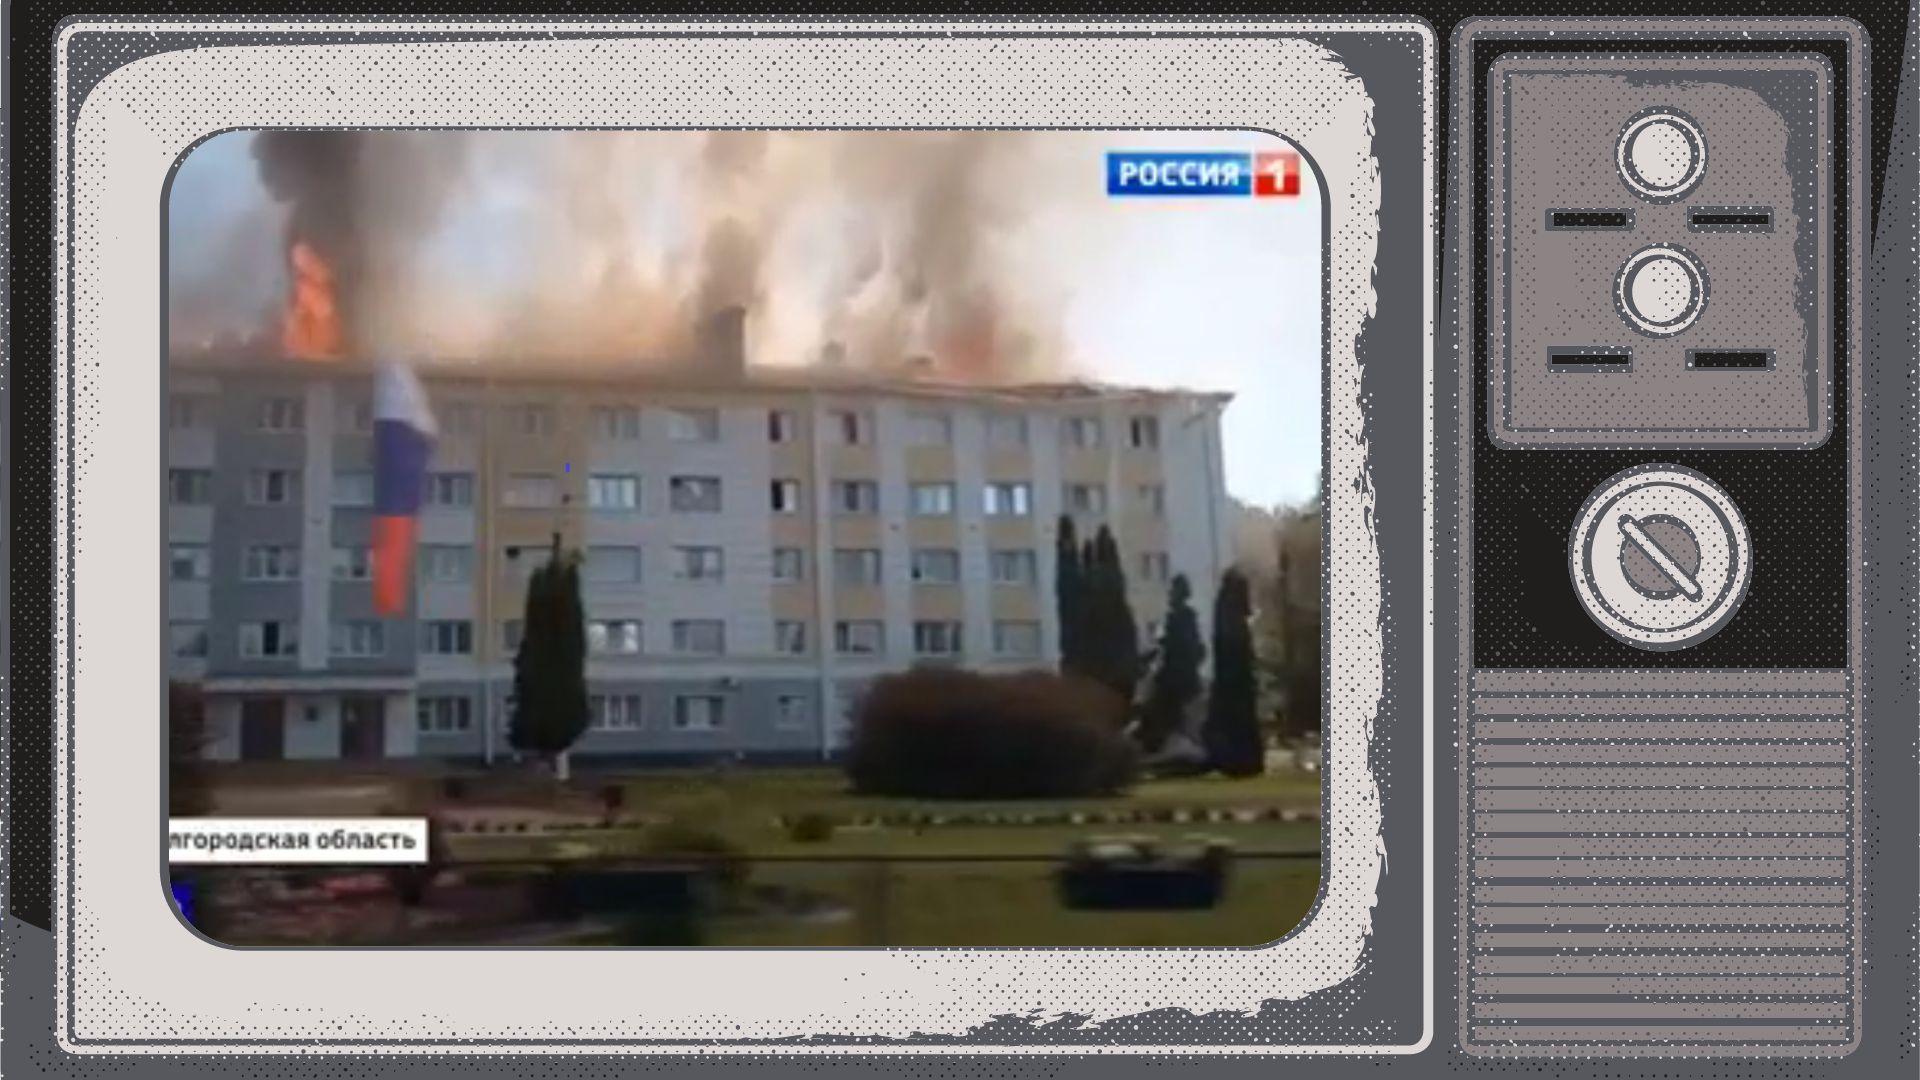 Grafika: w ramce starego telewizora płonący budynek z rosyjską flagą (budynek administracji rosyjskiej w Szebiekinie)